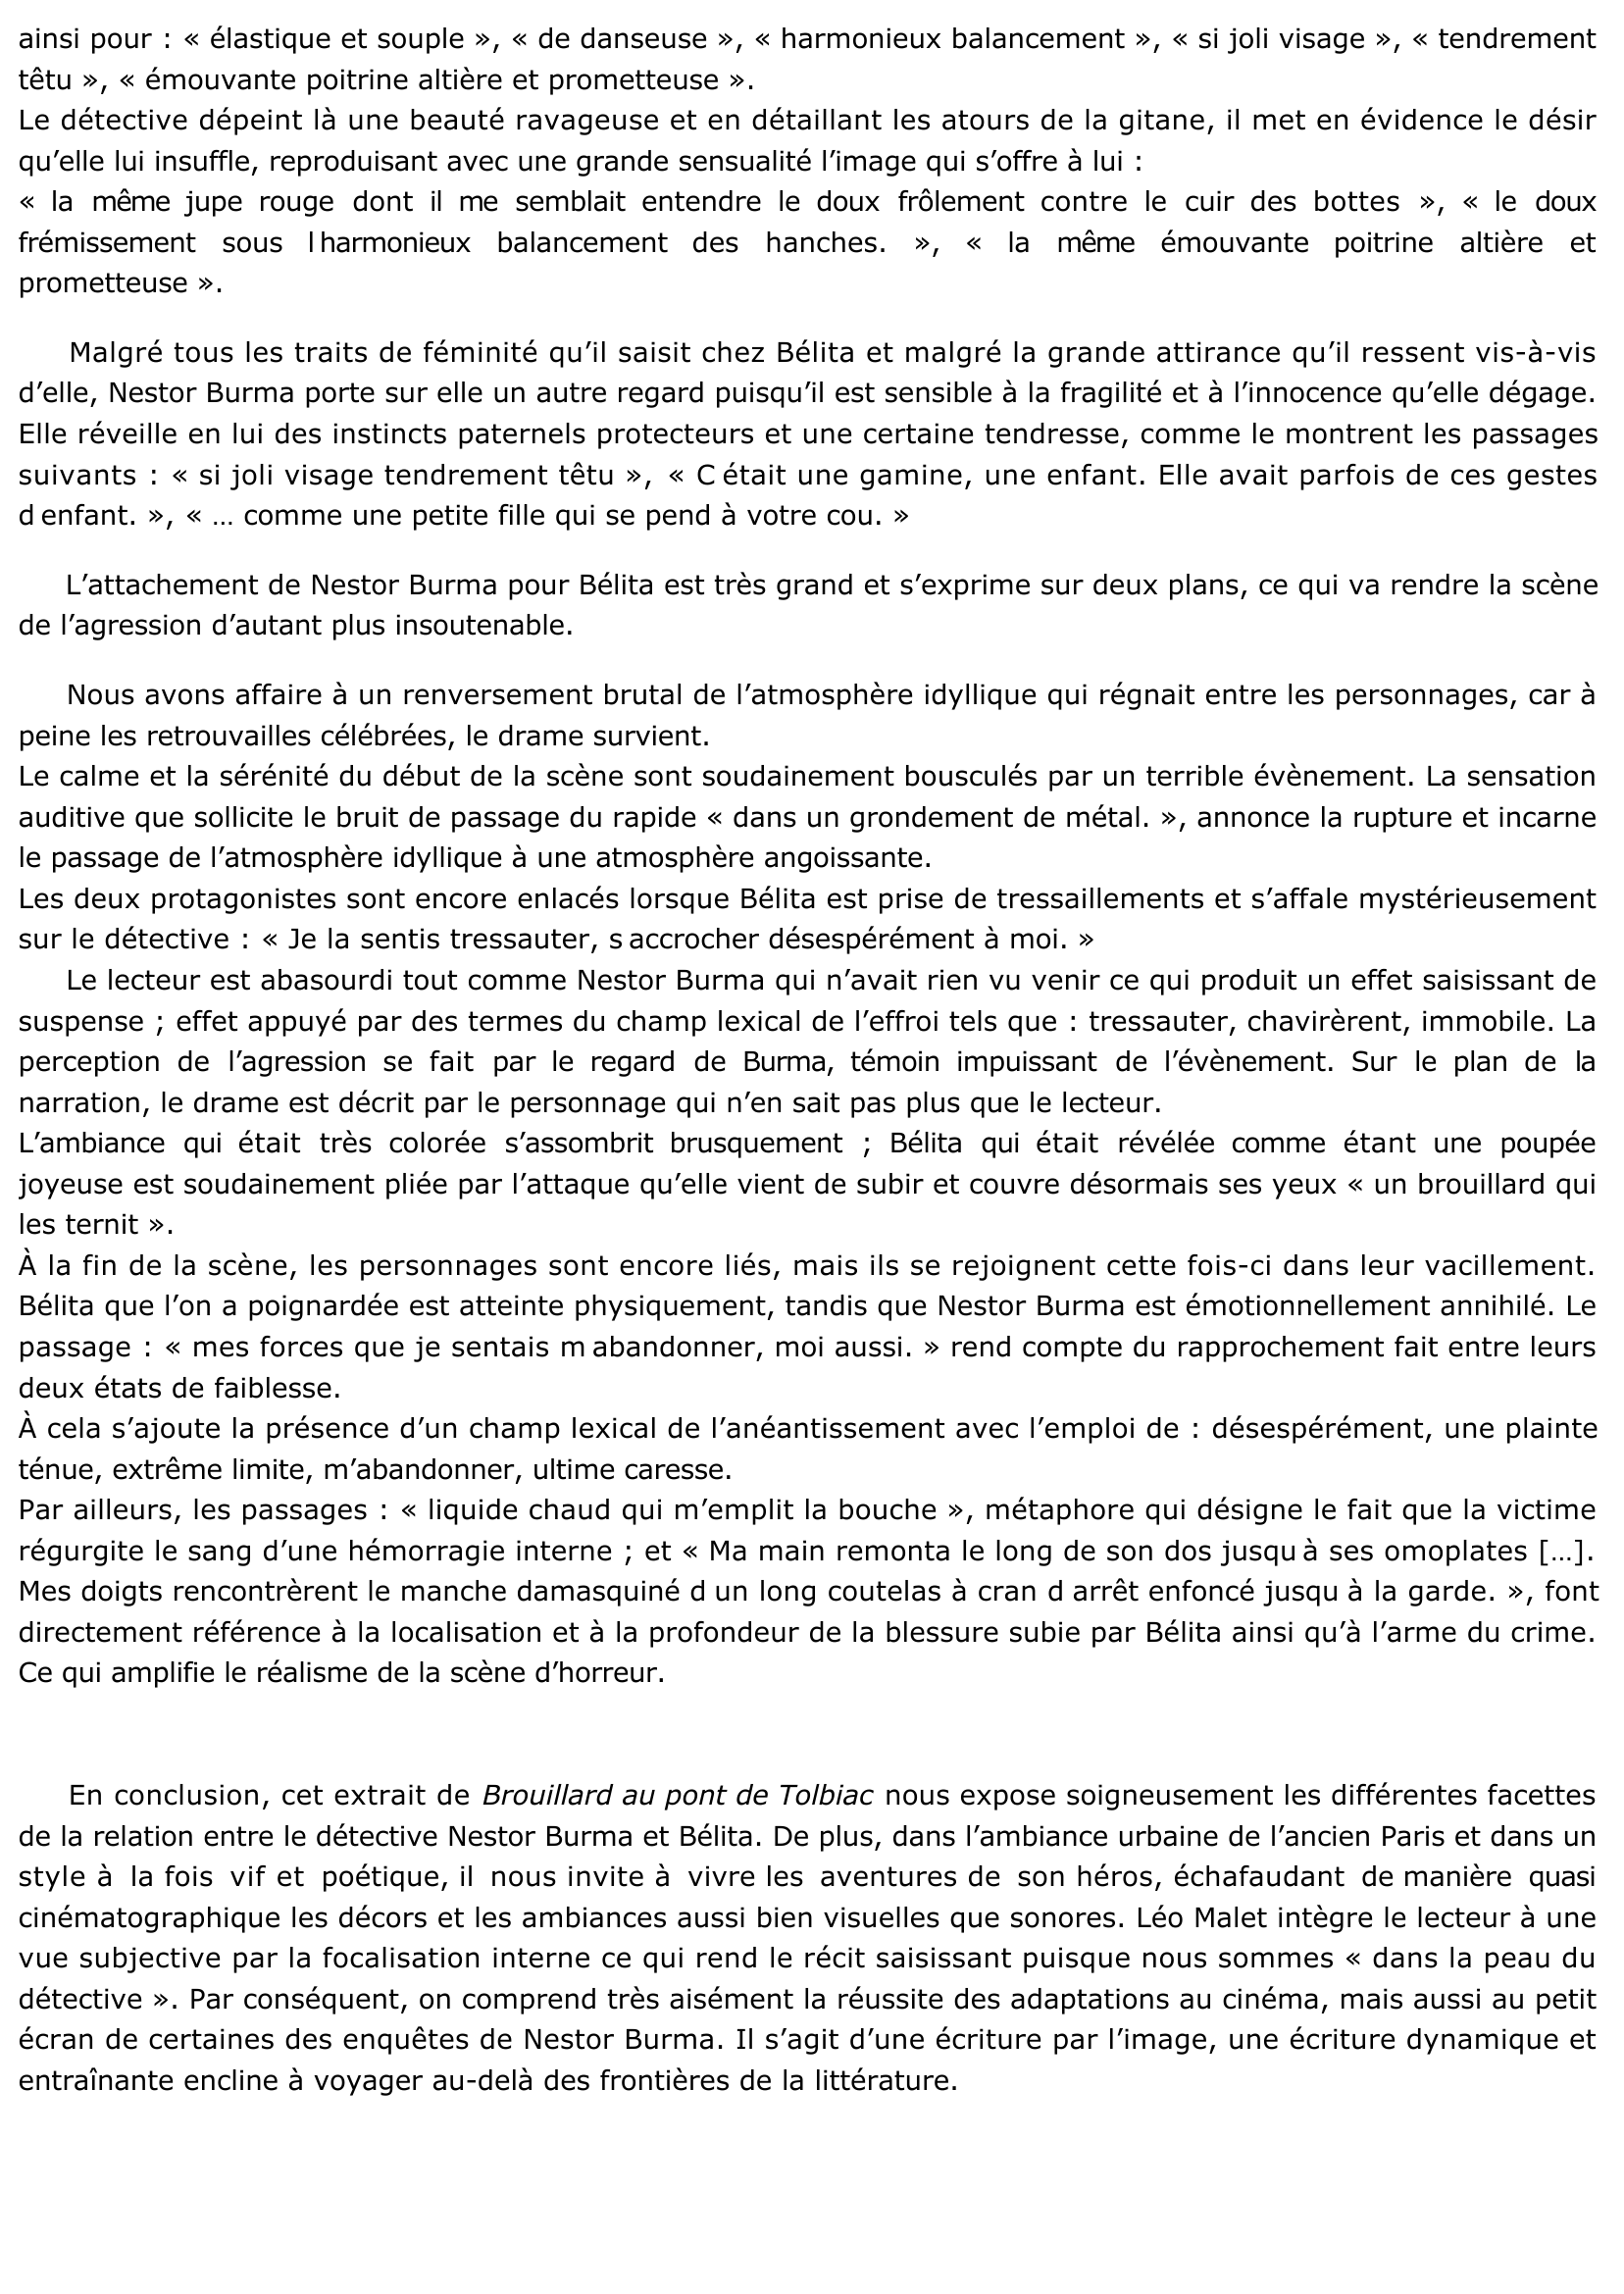 Prévisualisation du document Brouillard au pont de Tolbiac de Léo Malet